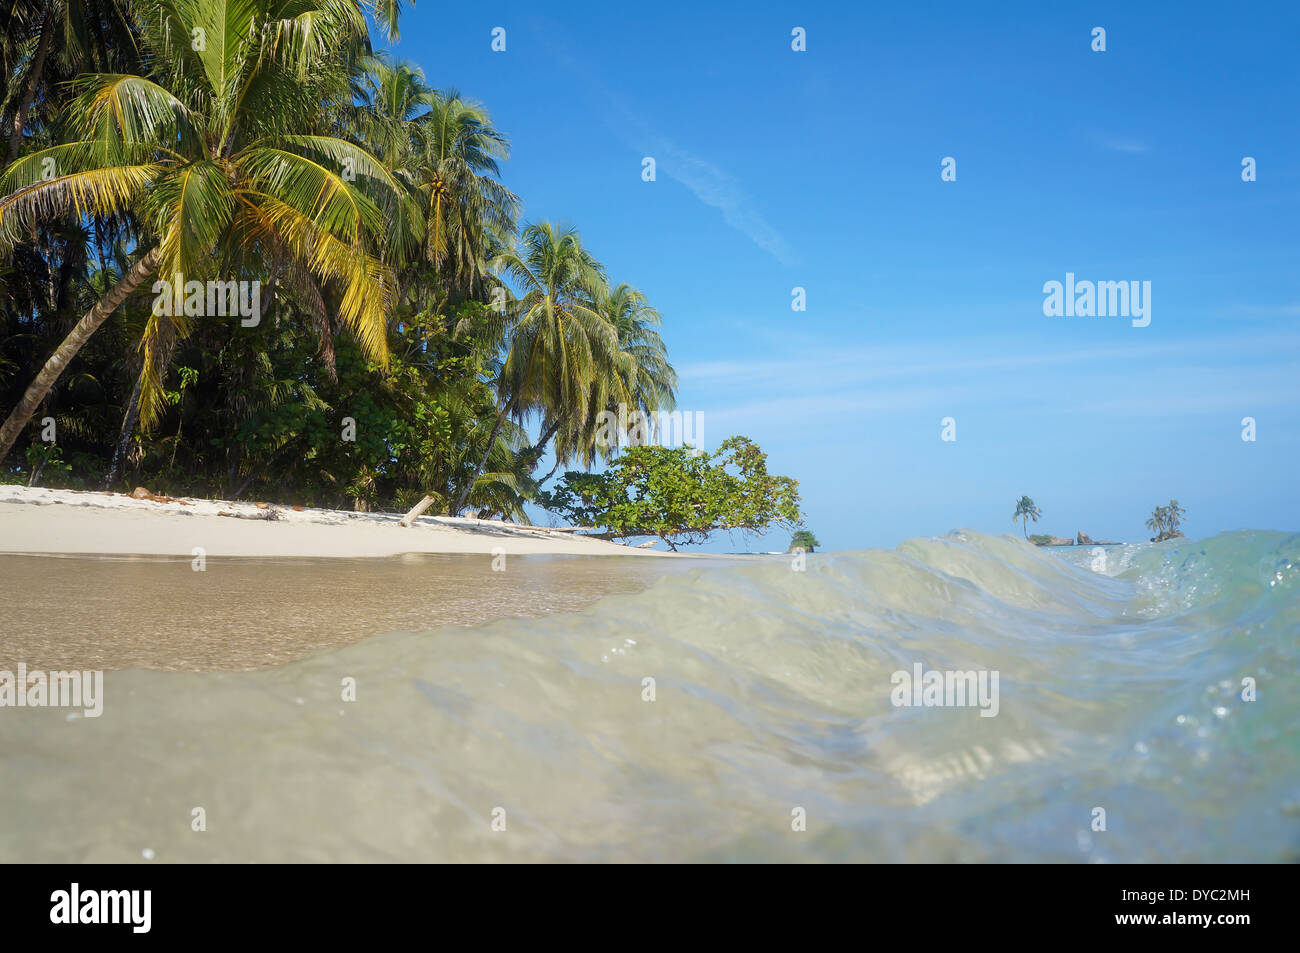 Piccole onde su una spiaggia sabbiosa con vegetazione tropicale visto dalla superficie dell'acqua, il mare dei Caraibi Foto Stock